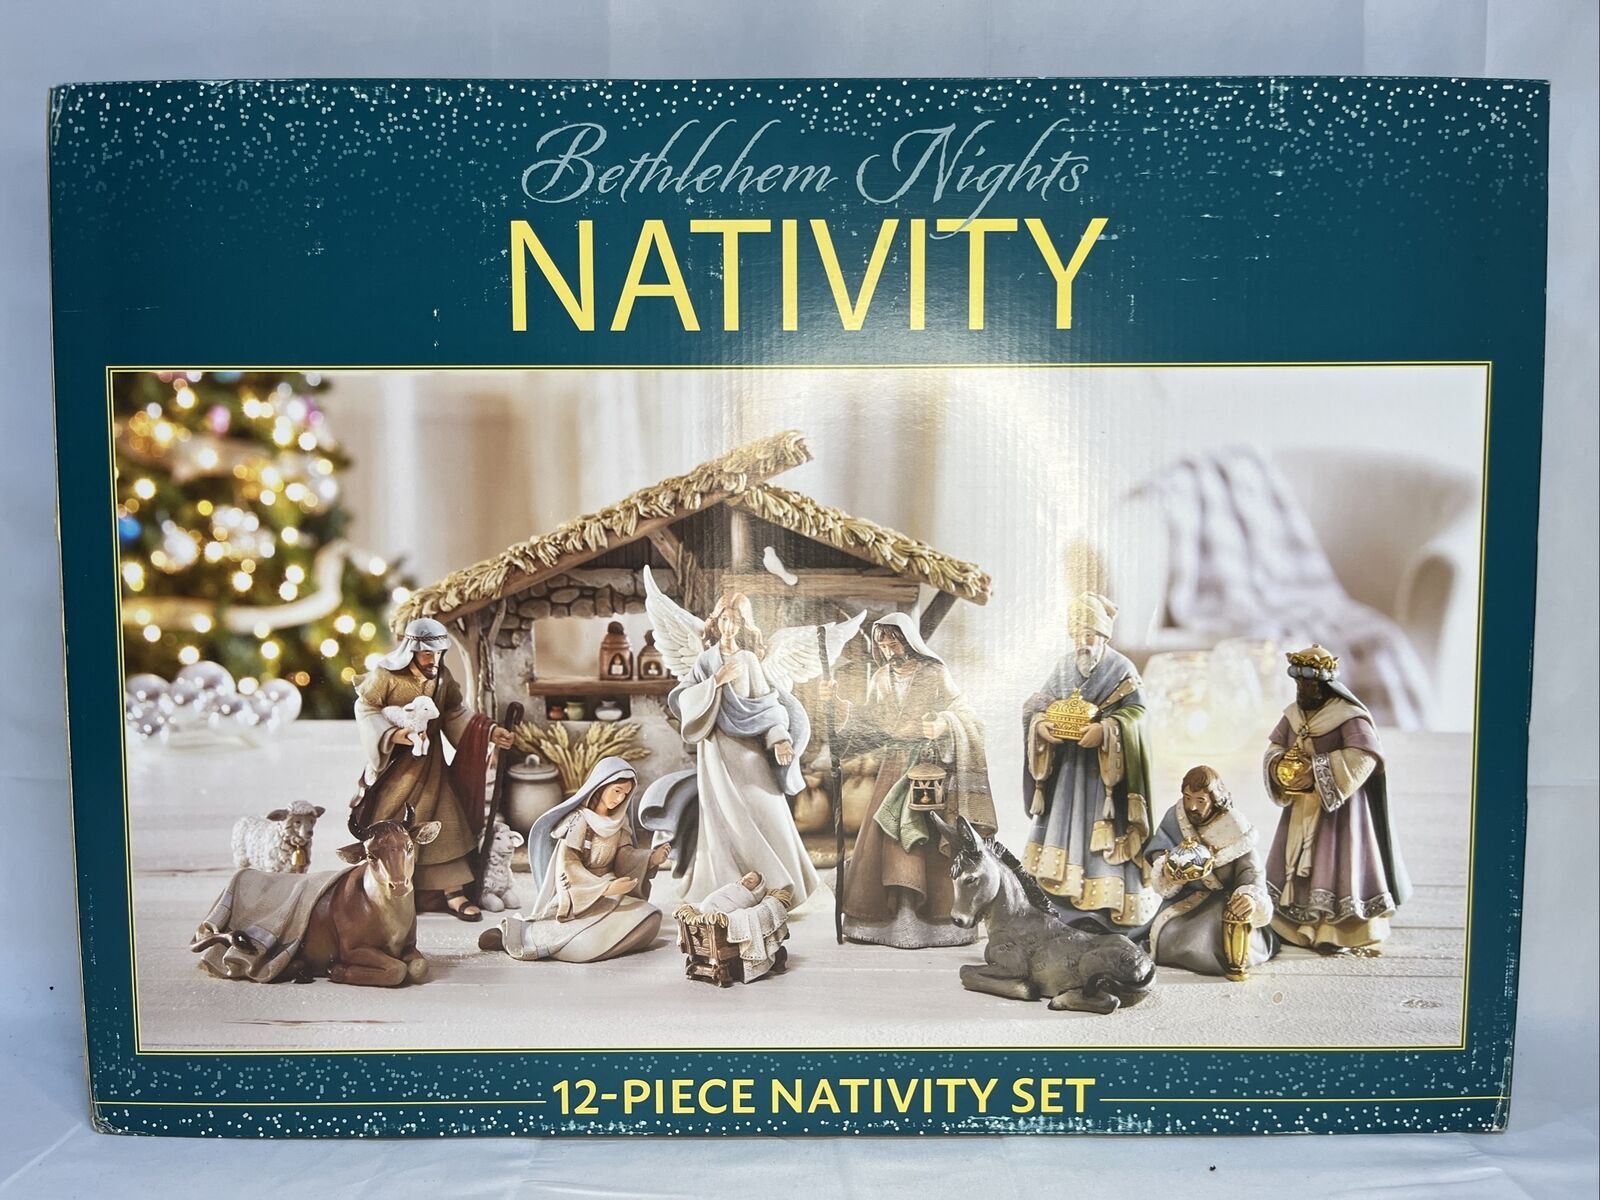 Bethlehem Nights Christmas Nativity Scene 12 Piece Set Brand New In Box